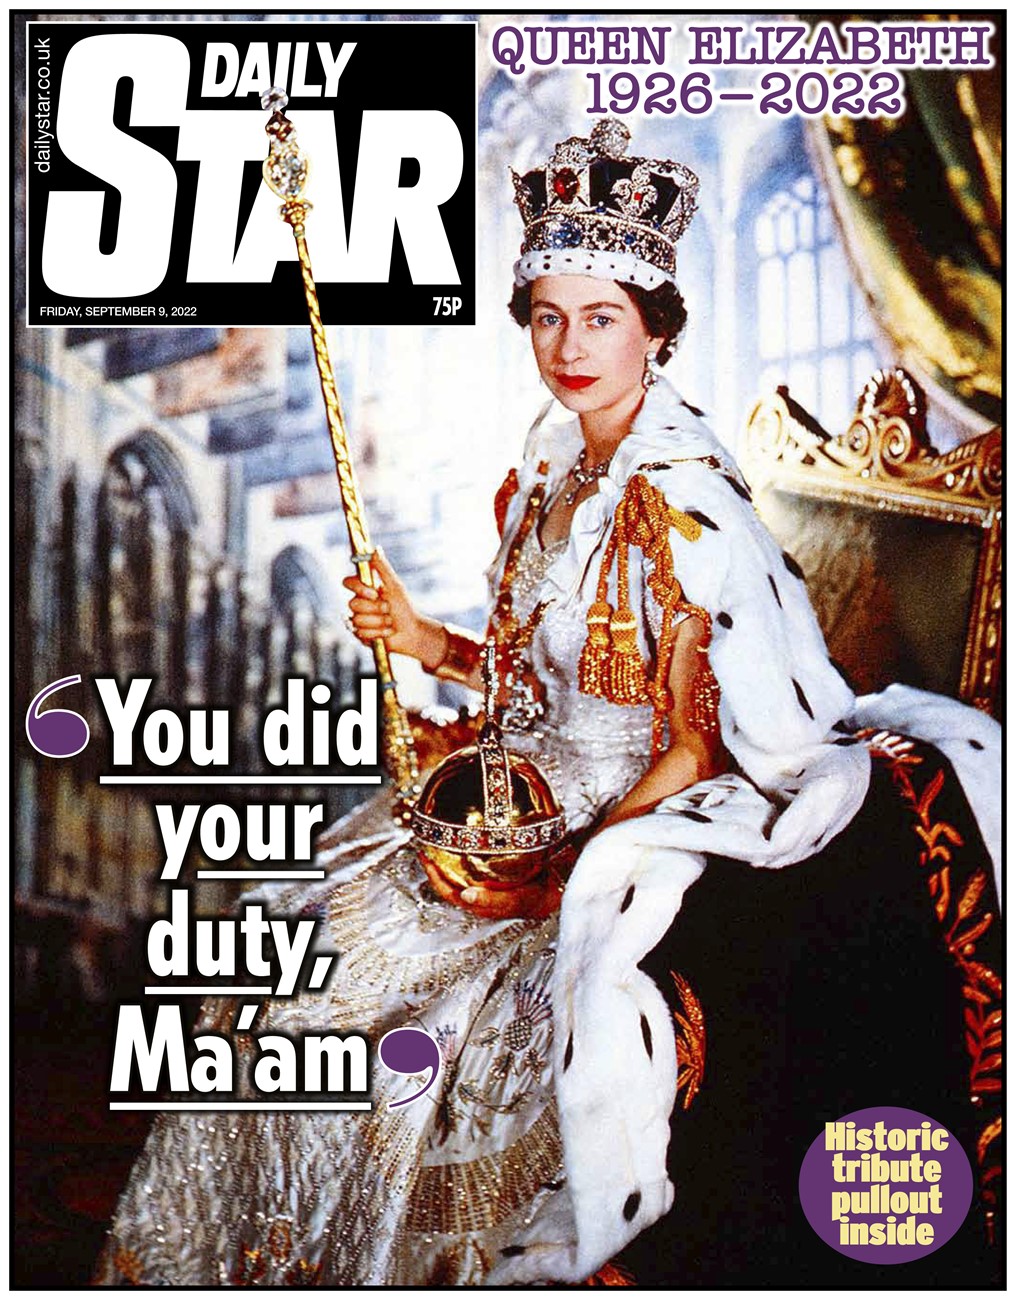 Cobertura imprensa britânica morte rainha Elizabeth II capas primeiras páginas jornal Daily Star